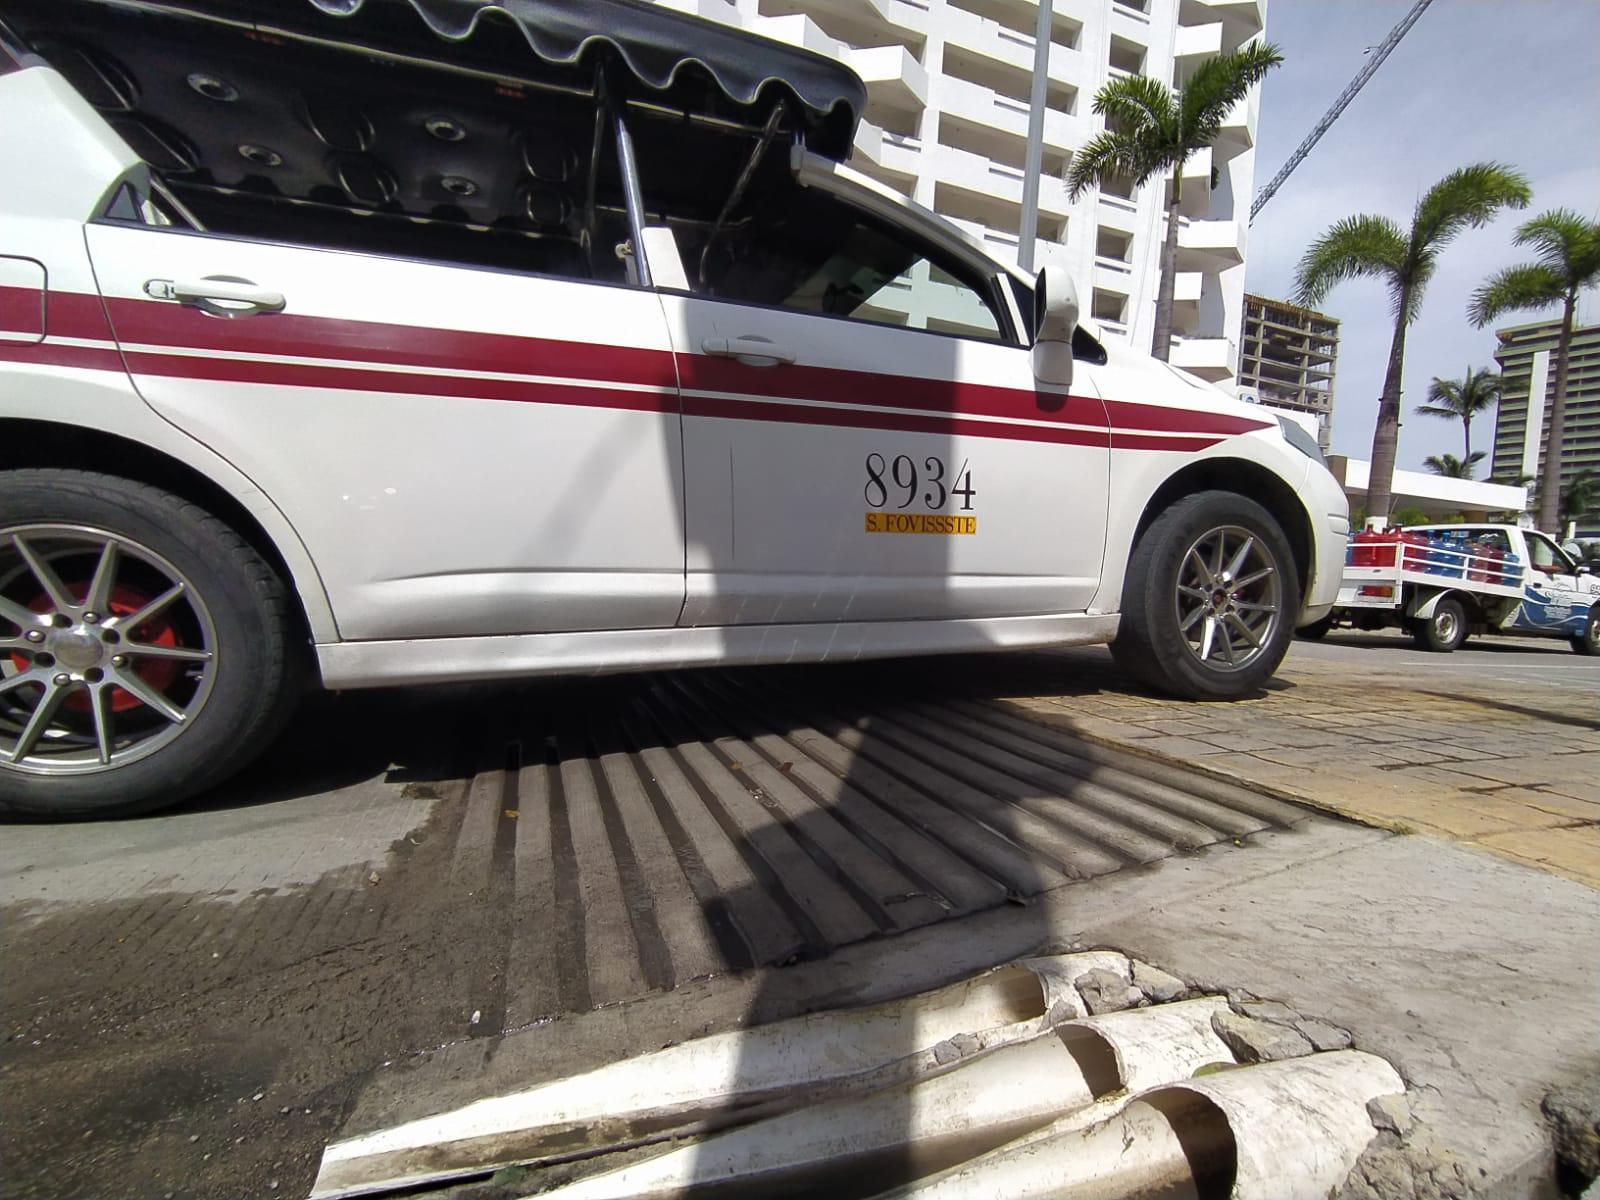 $!Paso peatonal elevado que se instaló en la zona turística de Mazatlán es una prueba, dicen autoridades